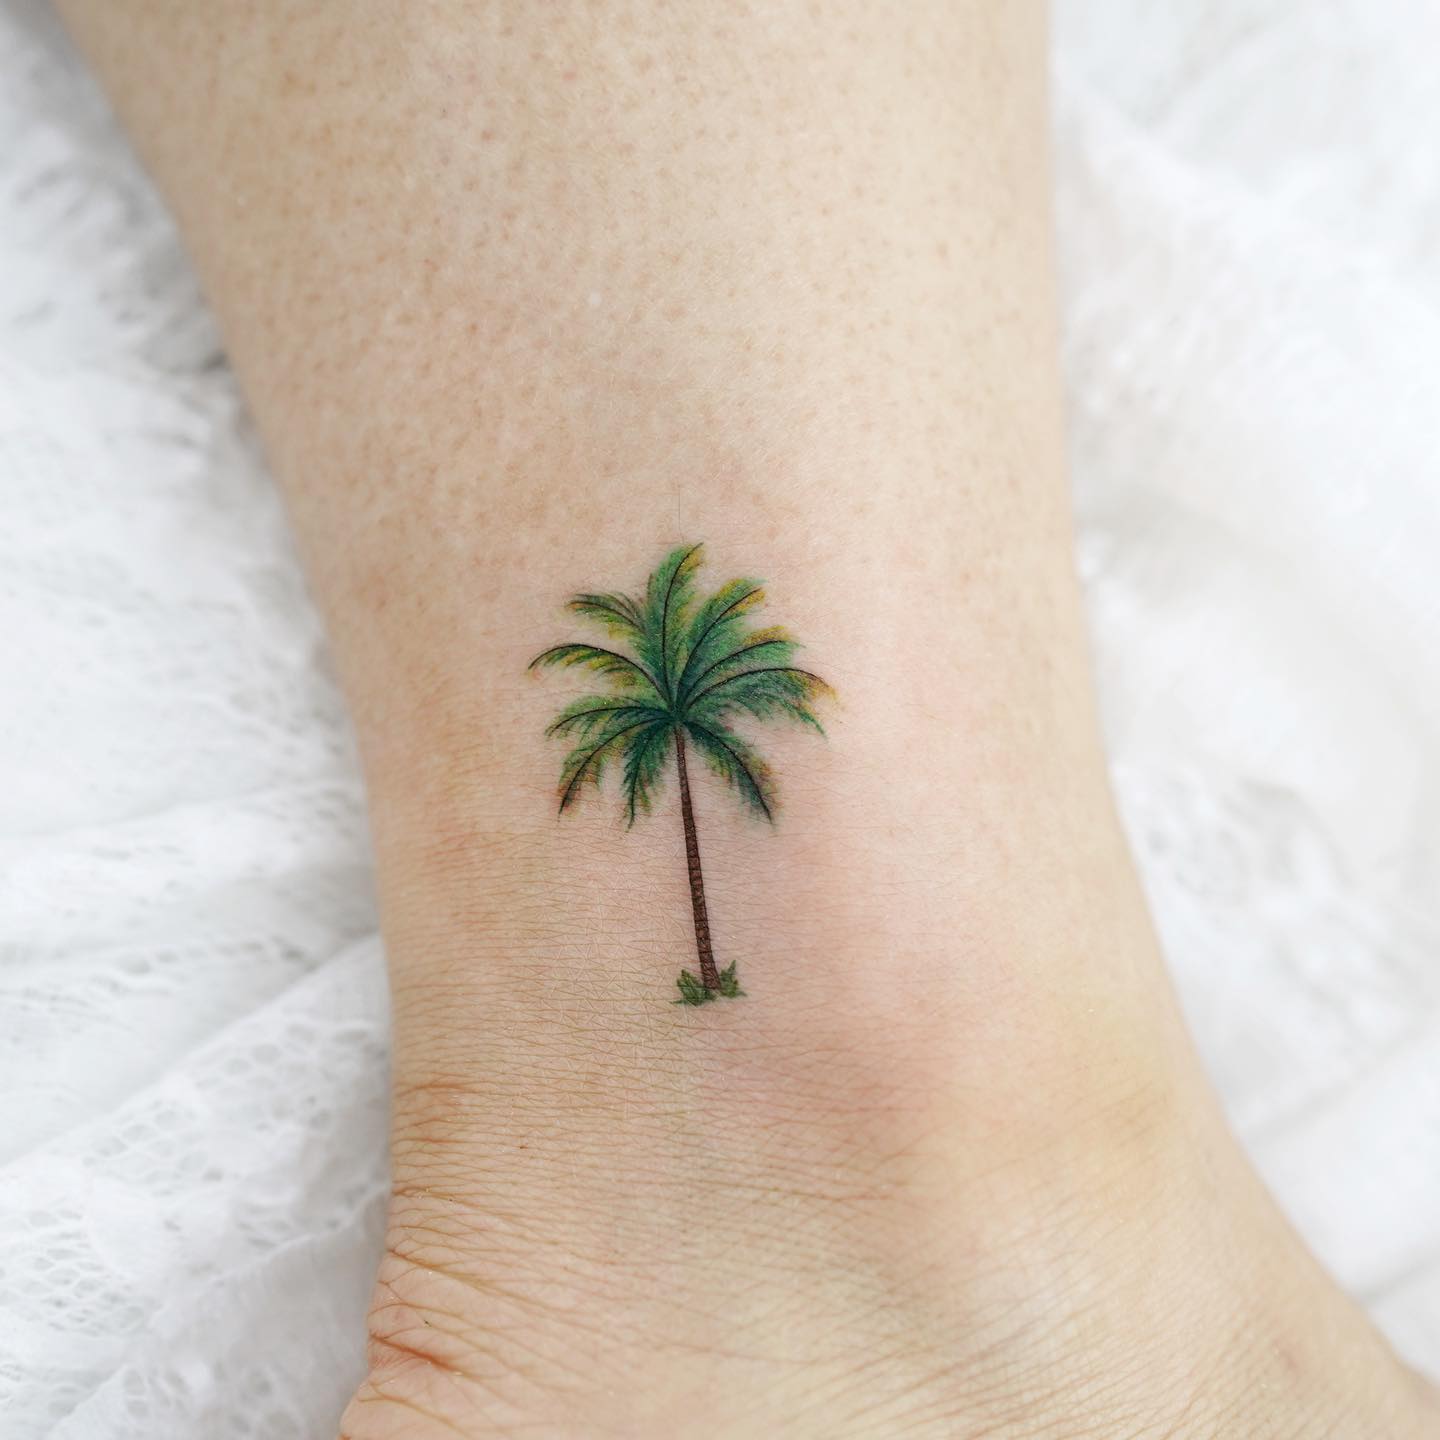 Tatuaje de palmera pequeña y colorida